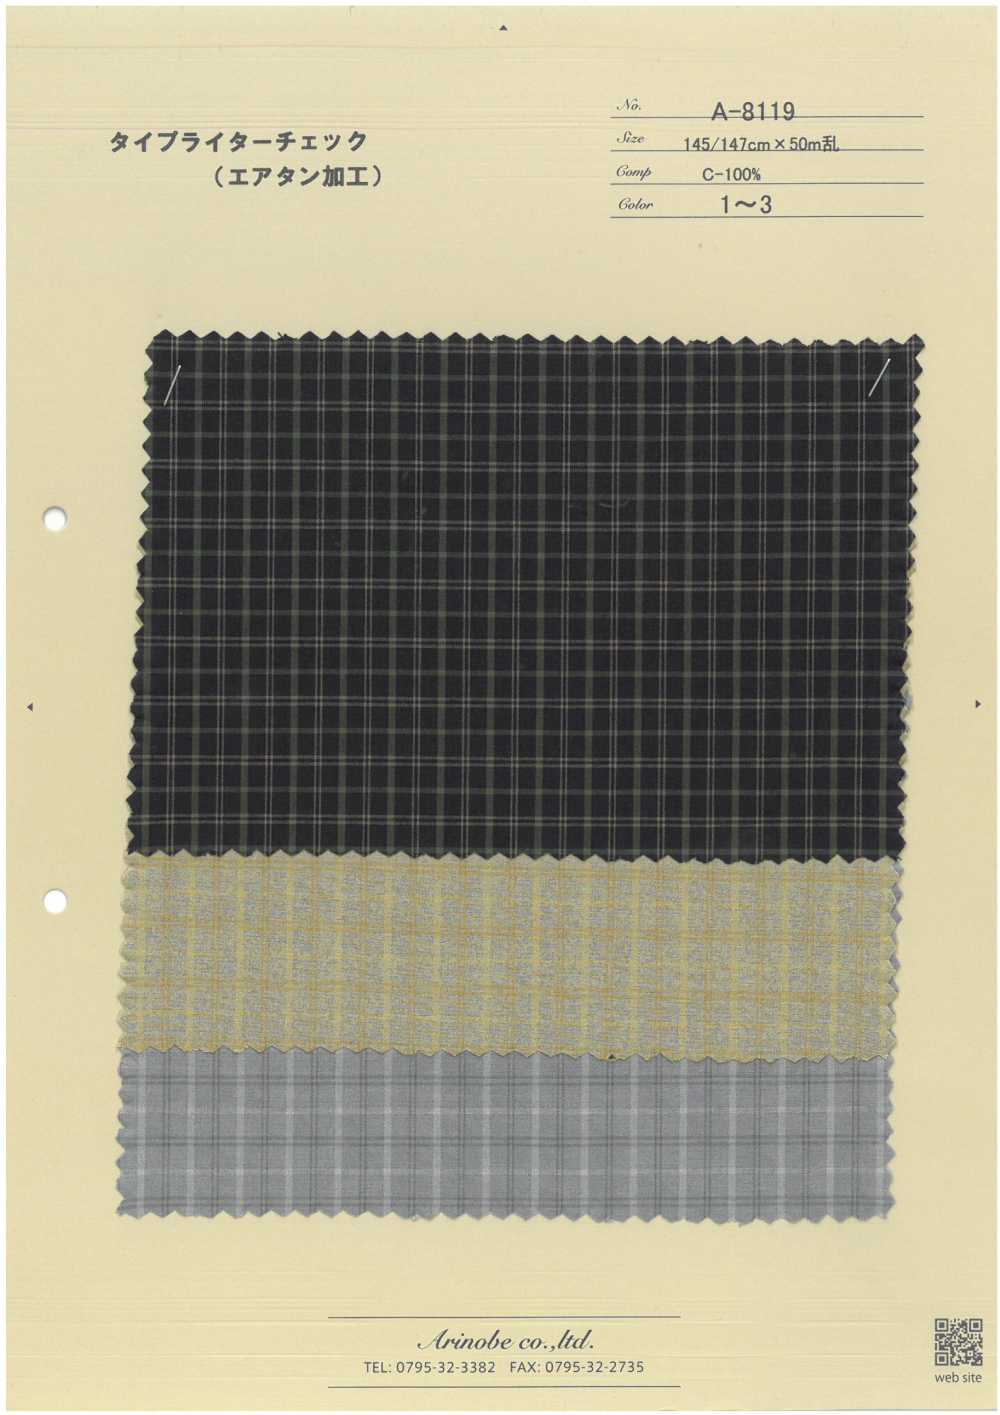 A-8119 Pano De Máquina De Escrever (Processamento Air Tan)[Têxtil / Tecido] ARINOBE CO., LTD.